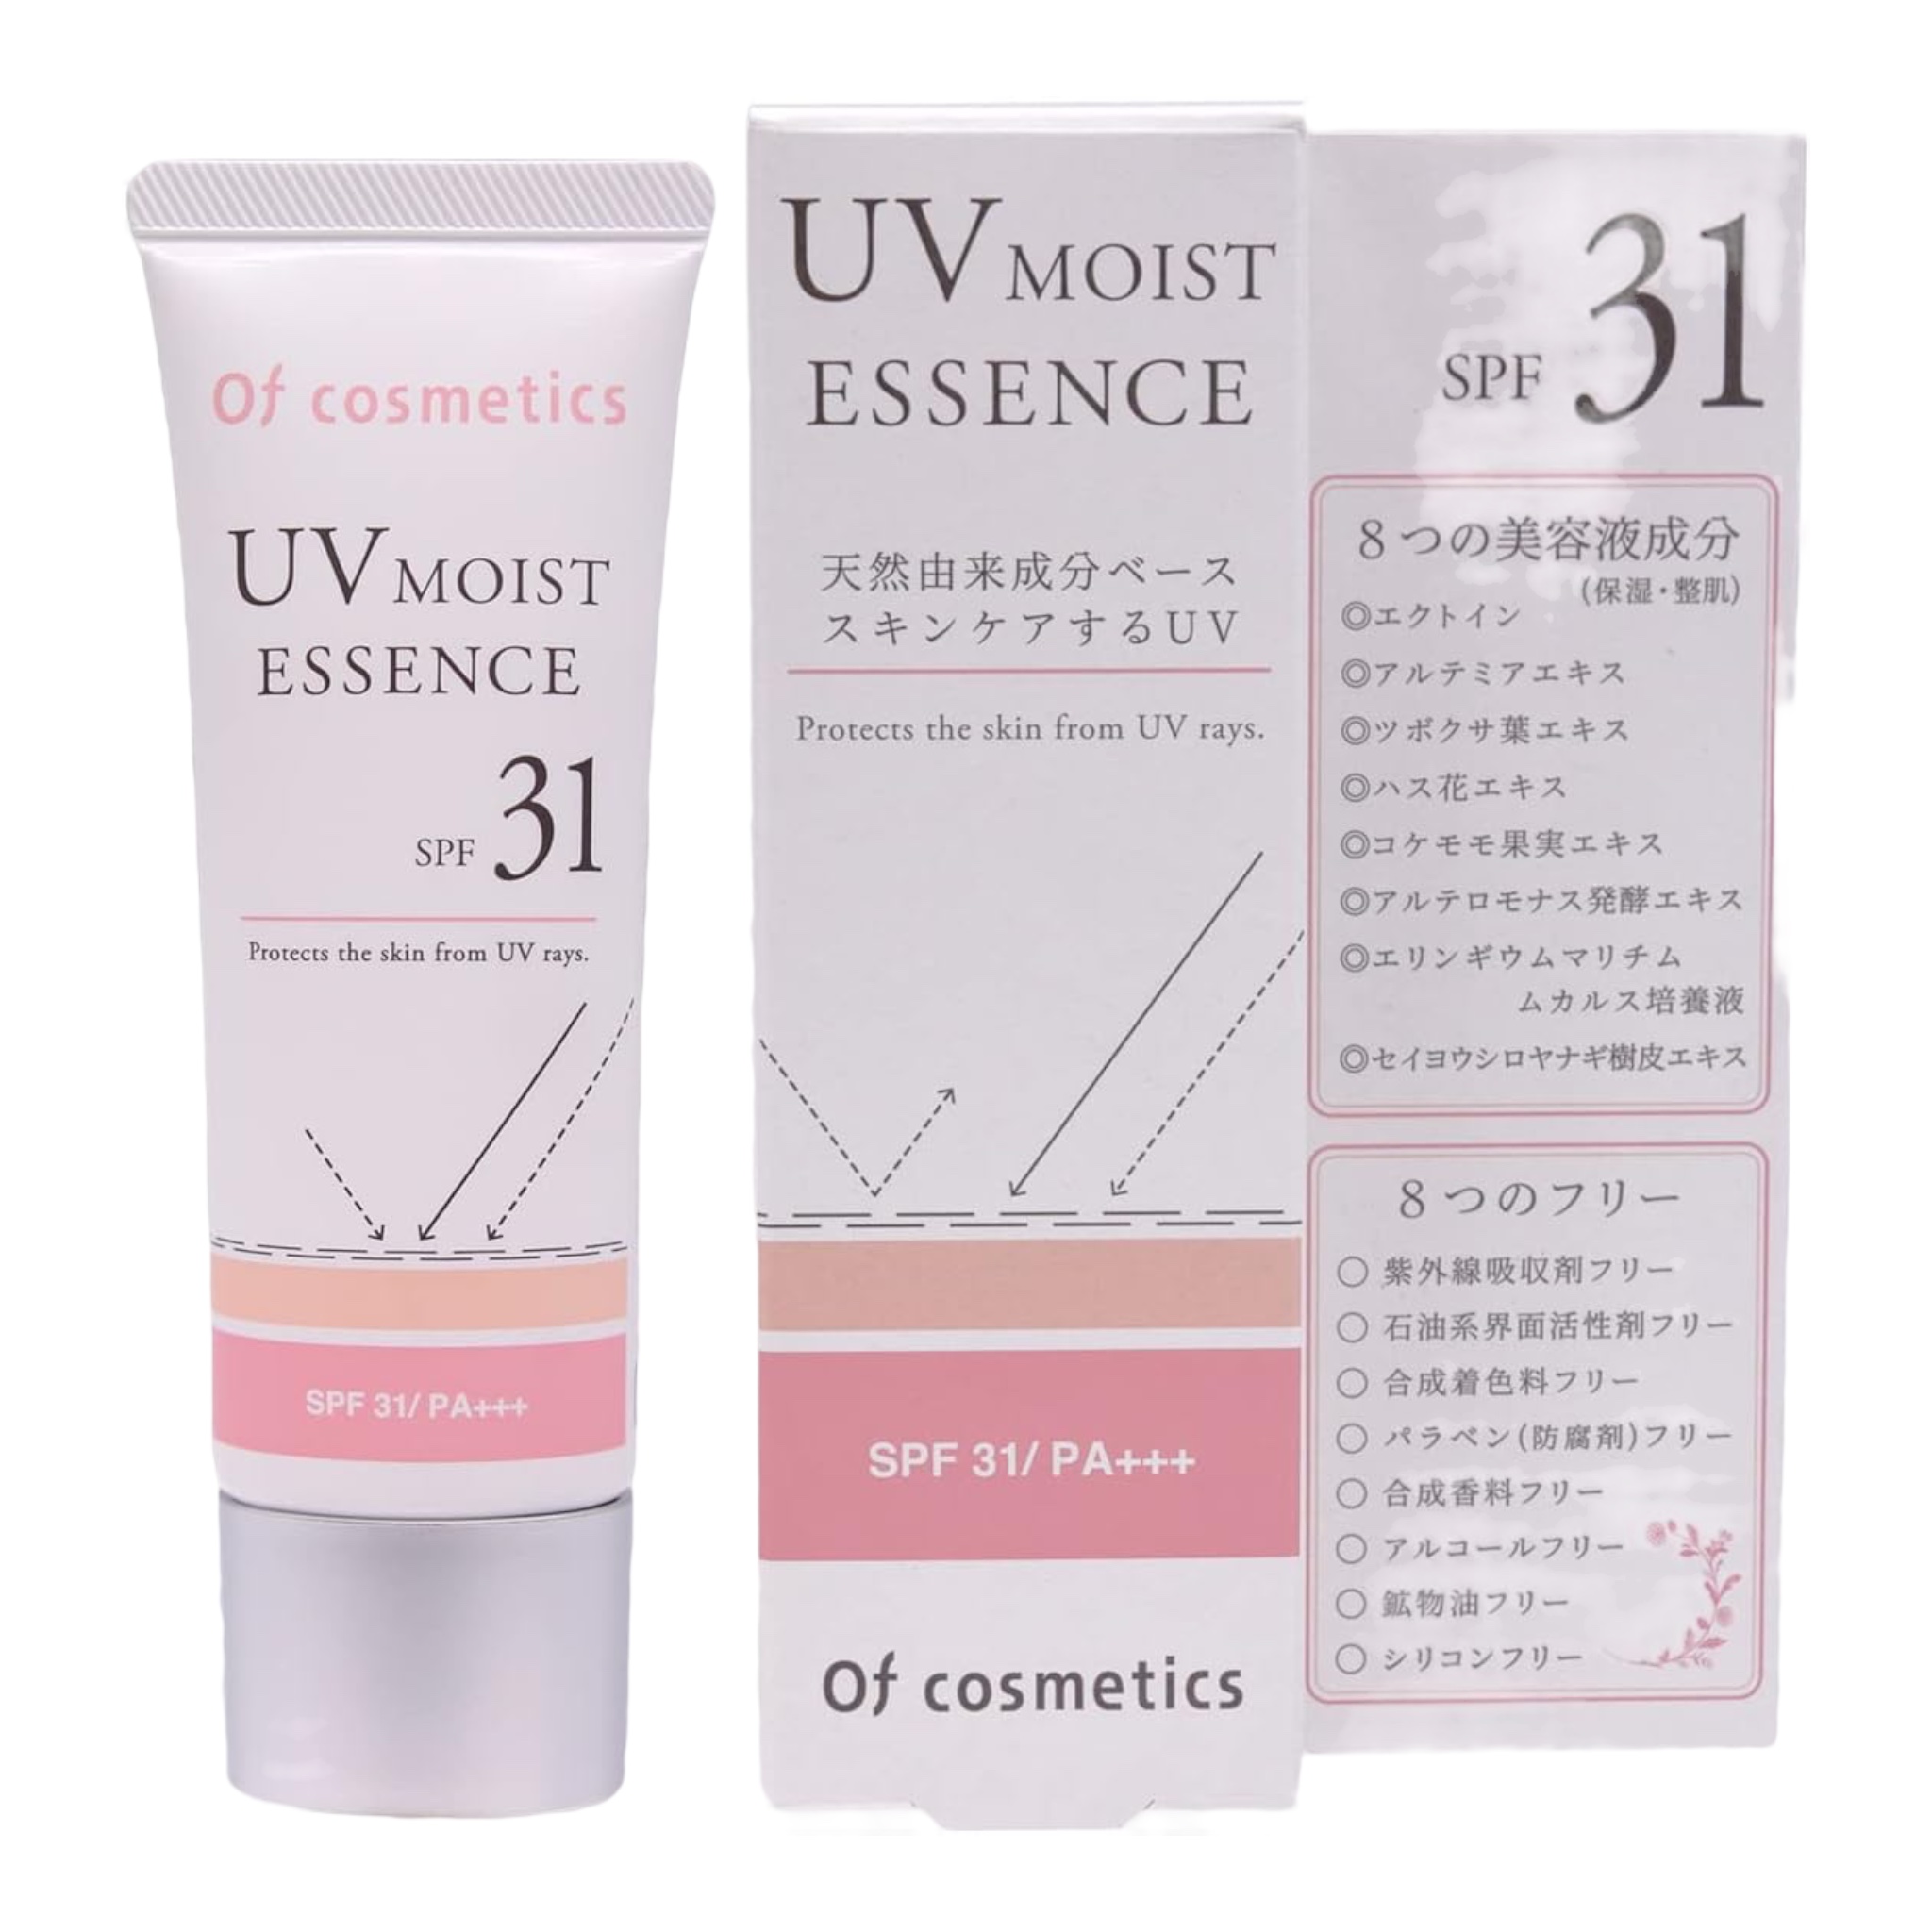 オブ・コスメティックス(Of cosmetics) UVモイストエッセンス・31